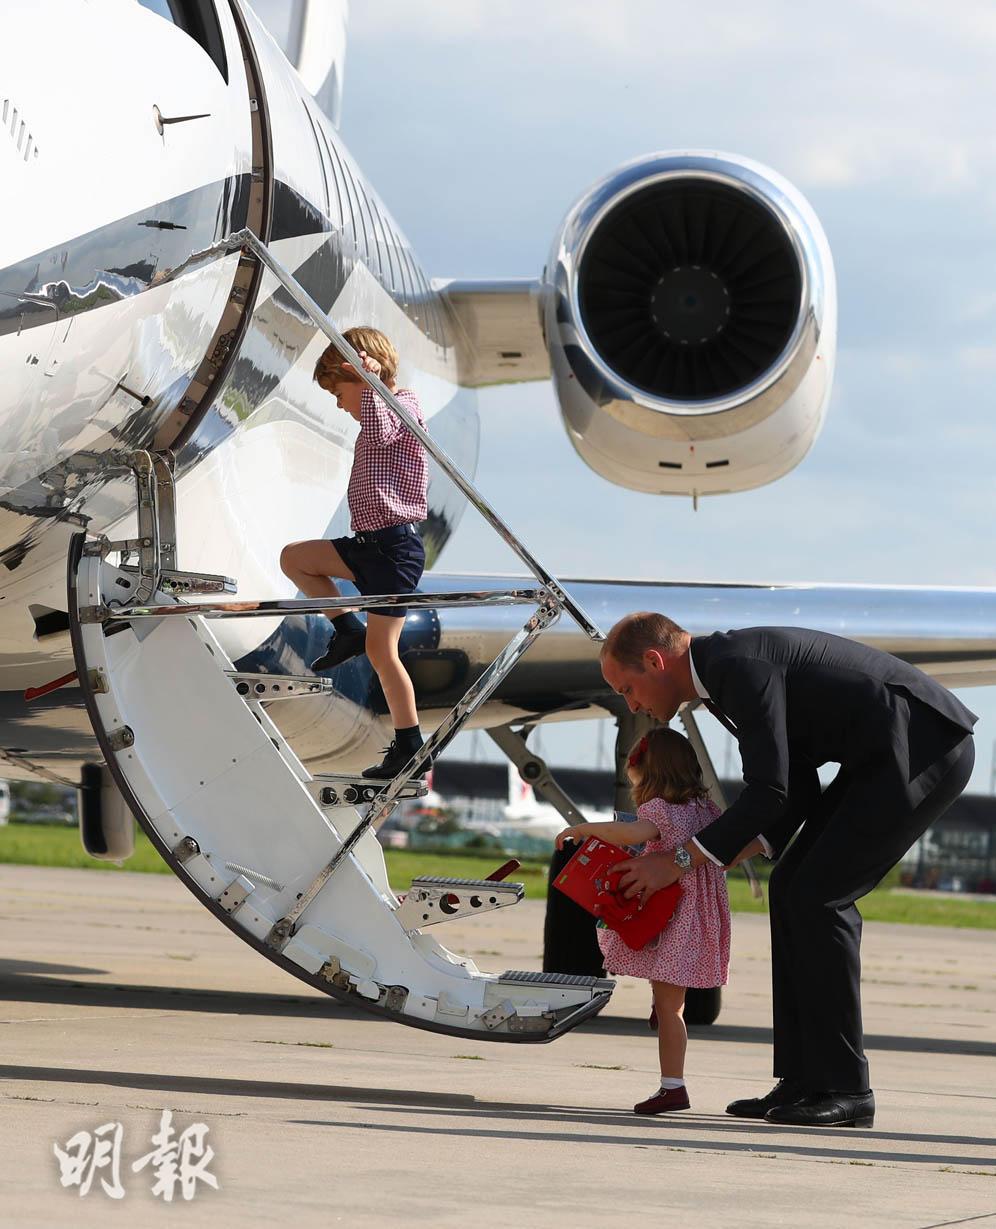 夏洛特小公主跟隨哥哥喬治小王子（前）登上飛機。(法新社)